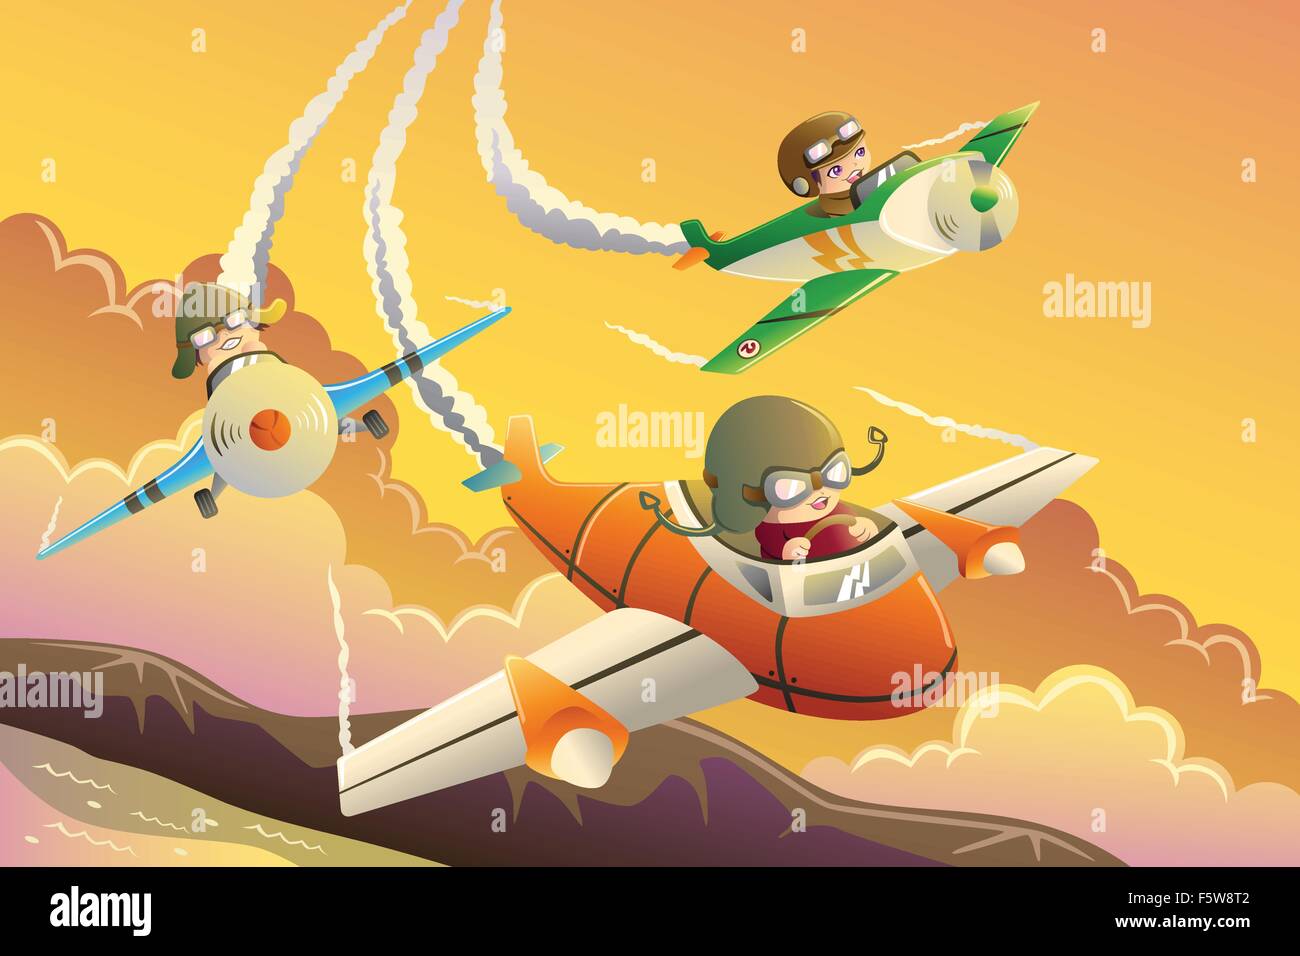 Eine Vektor-Illustration der glückliche Kinder in einem Flugzeug-Rennen Stock Vektor